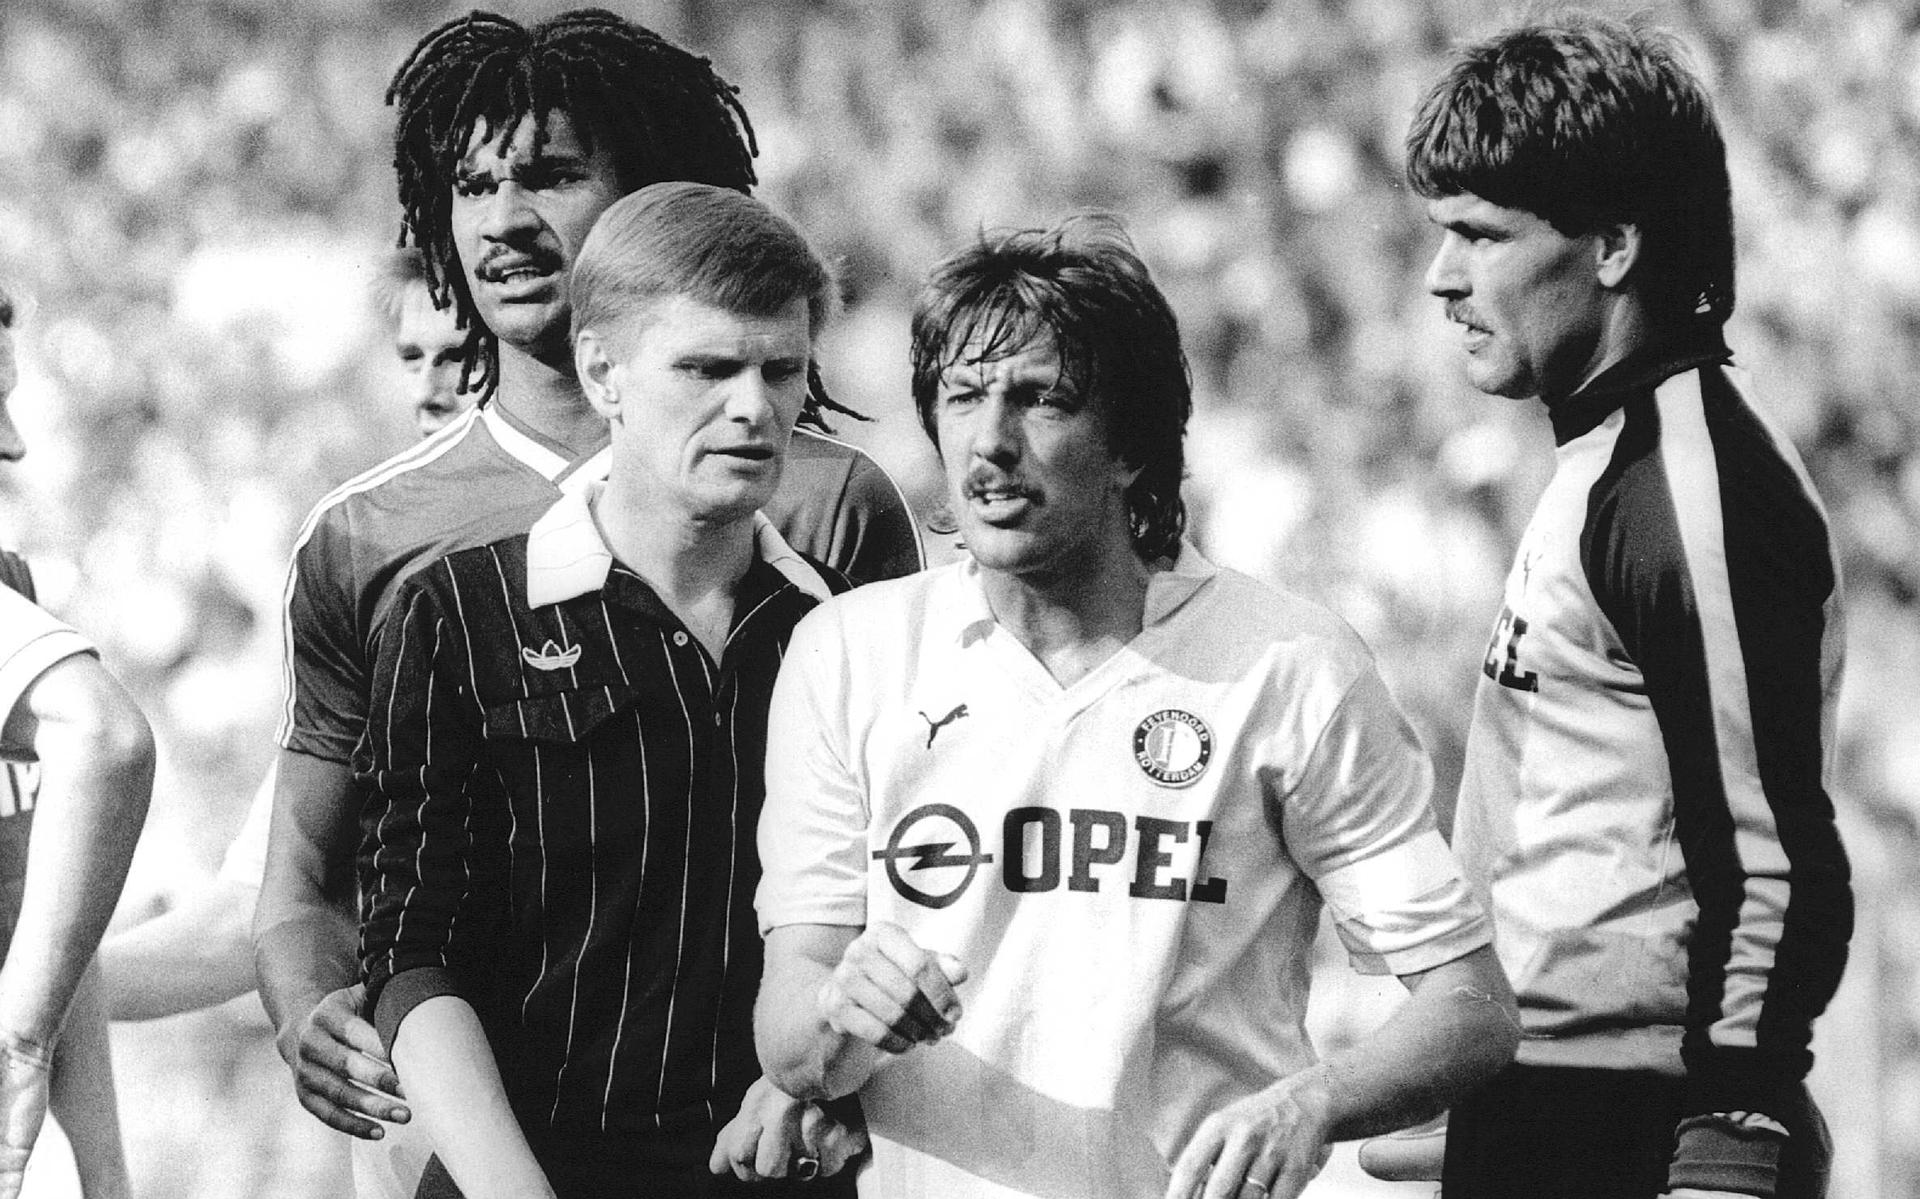 Scheidsrechter Egbert Mulder in actie in 1986 tijdens Feyenoord-PSV, met links van hem Ruud Gullit en rechts Ben Wijnstekers en doelman Joop Hiele.